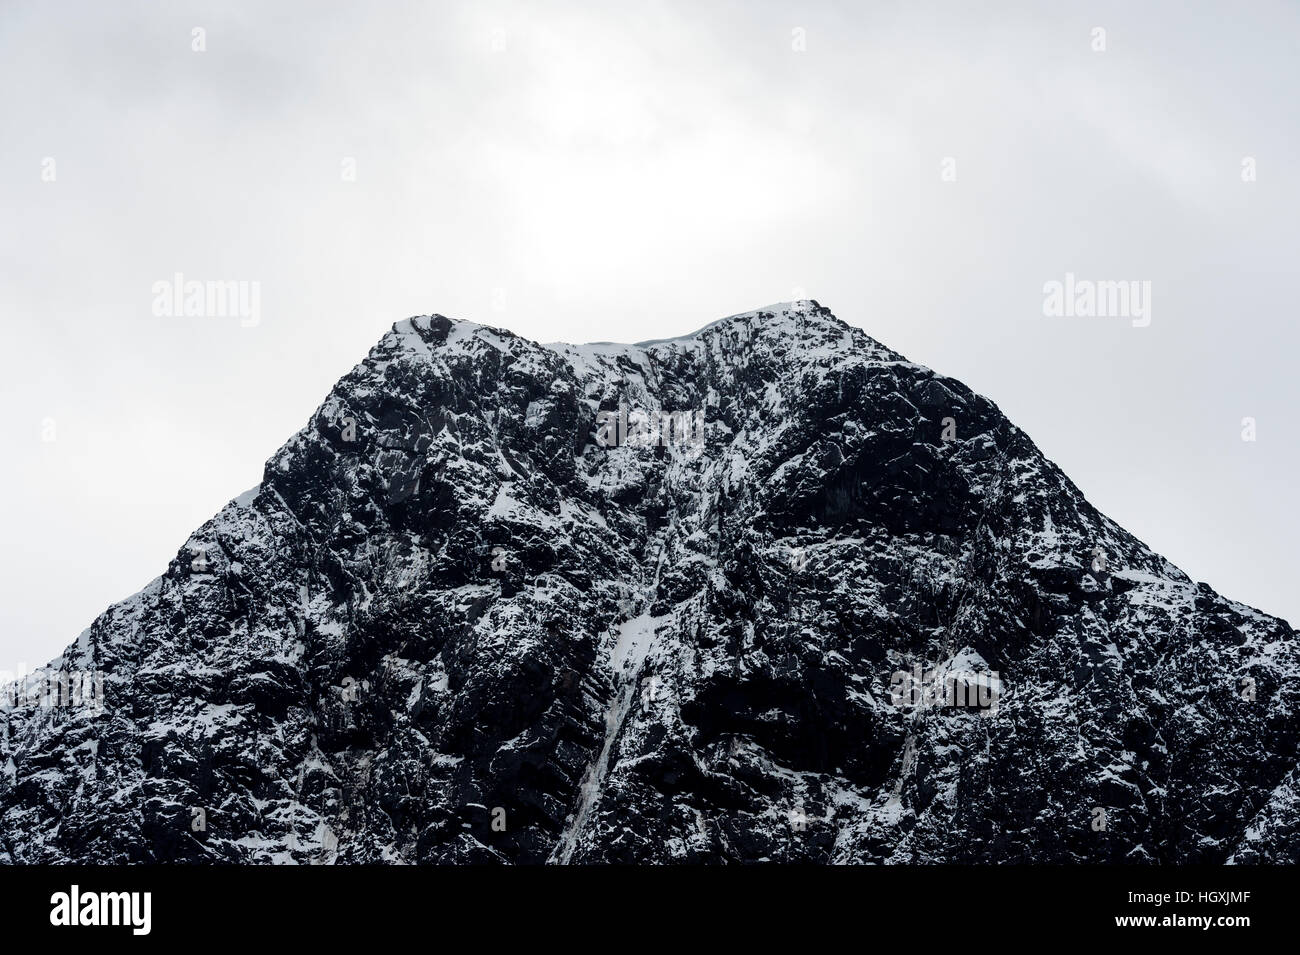 Un robusto cumbre de montaña con forma de cono espolvoreado con nieve y hielo. Foto de stock